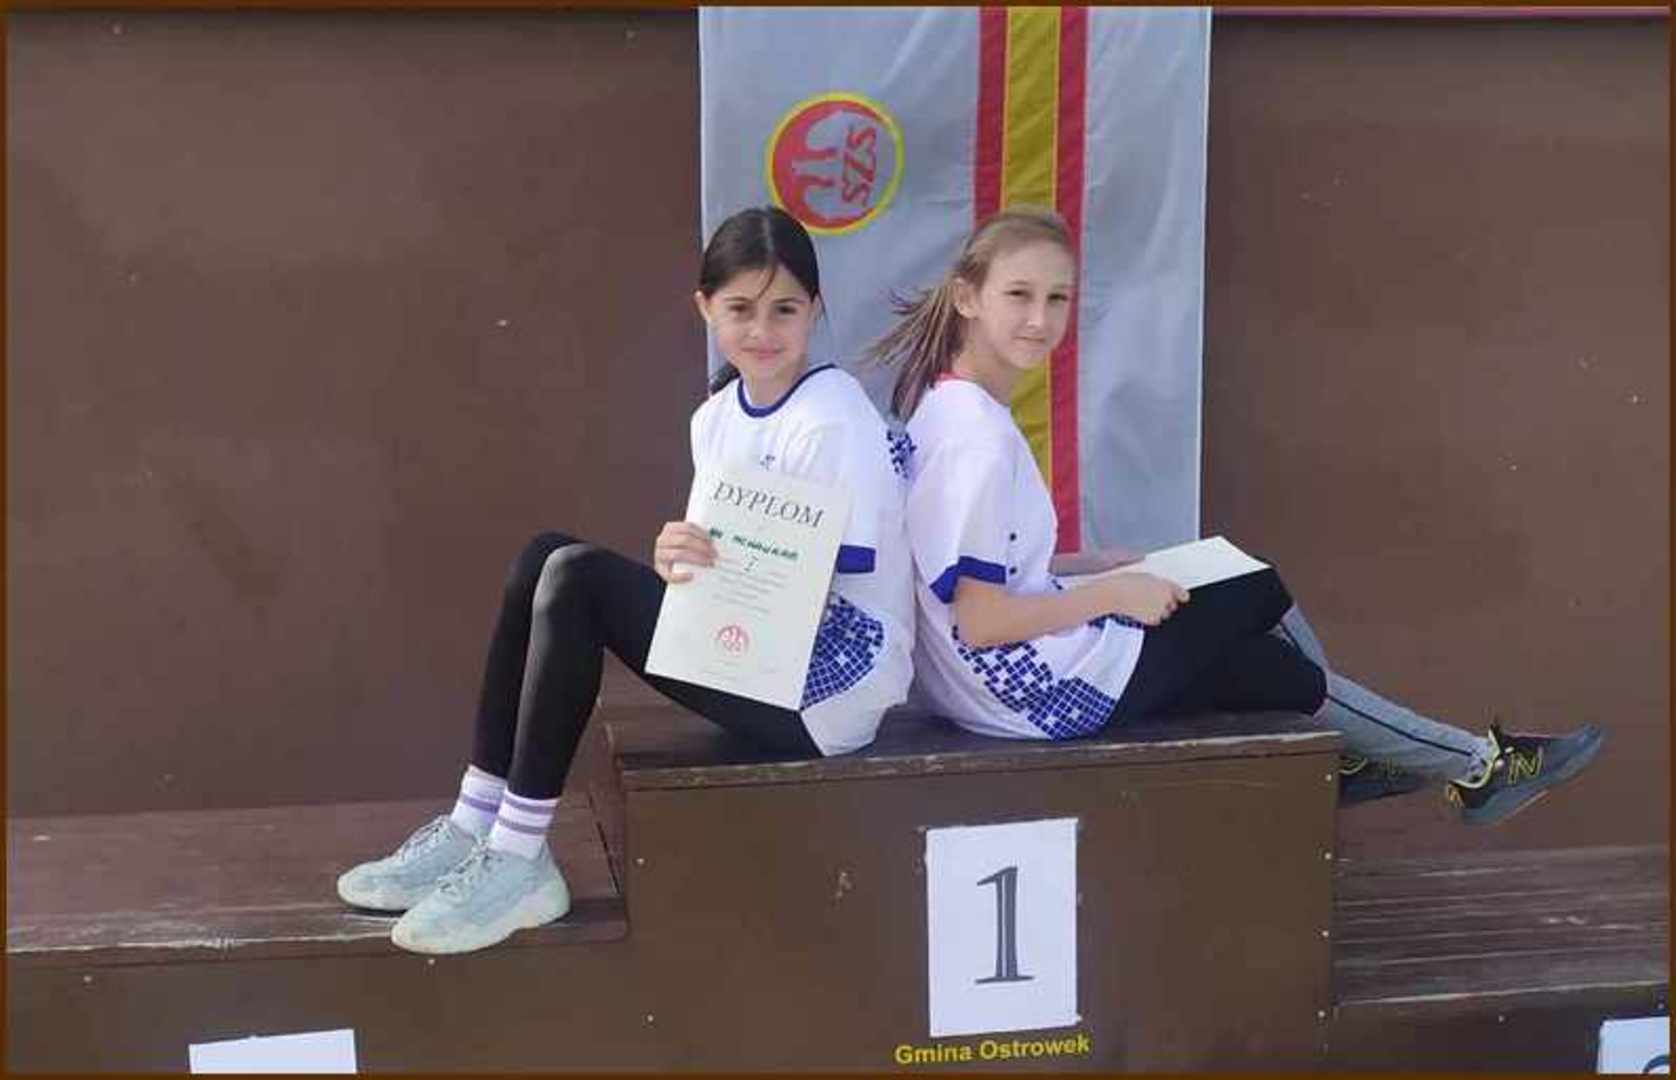 Iga Mchawrab i Karina Figura - finalistki biegów przełajowych na podium